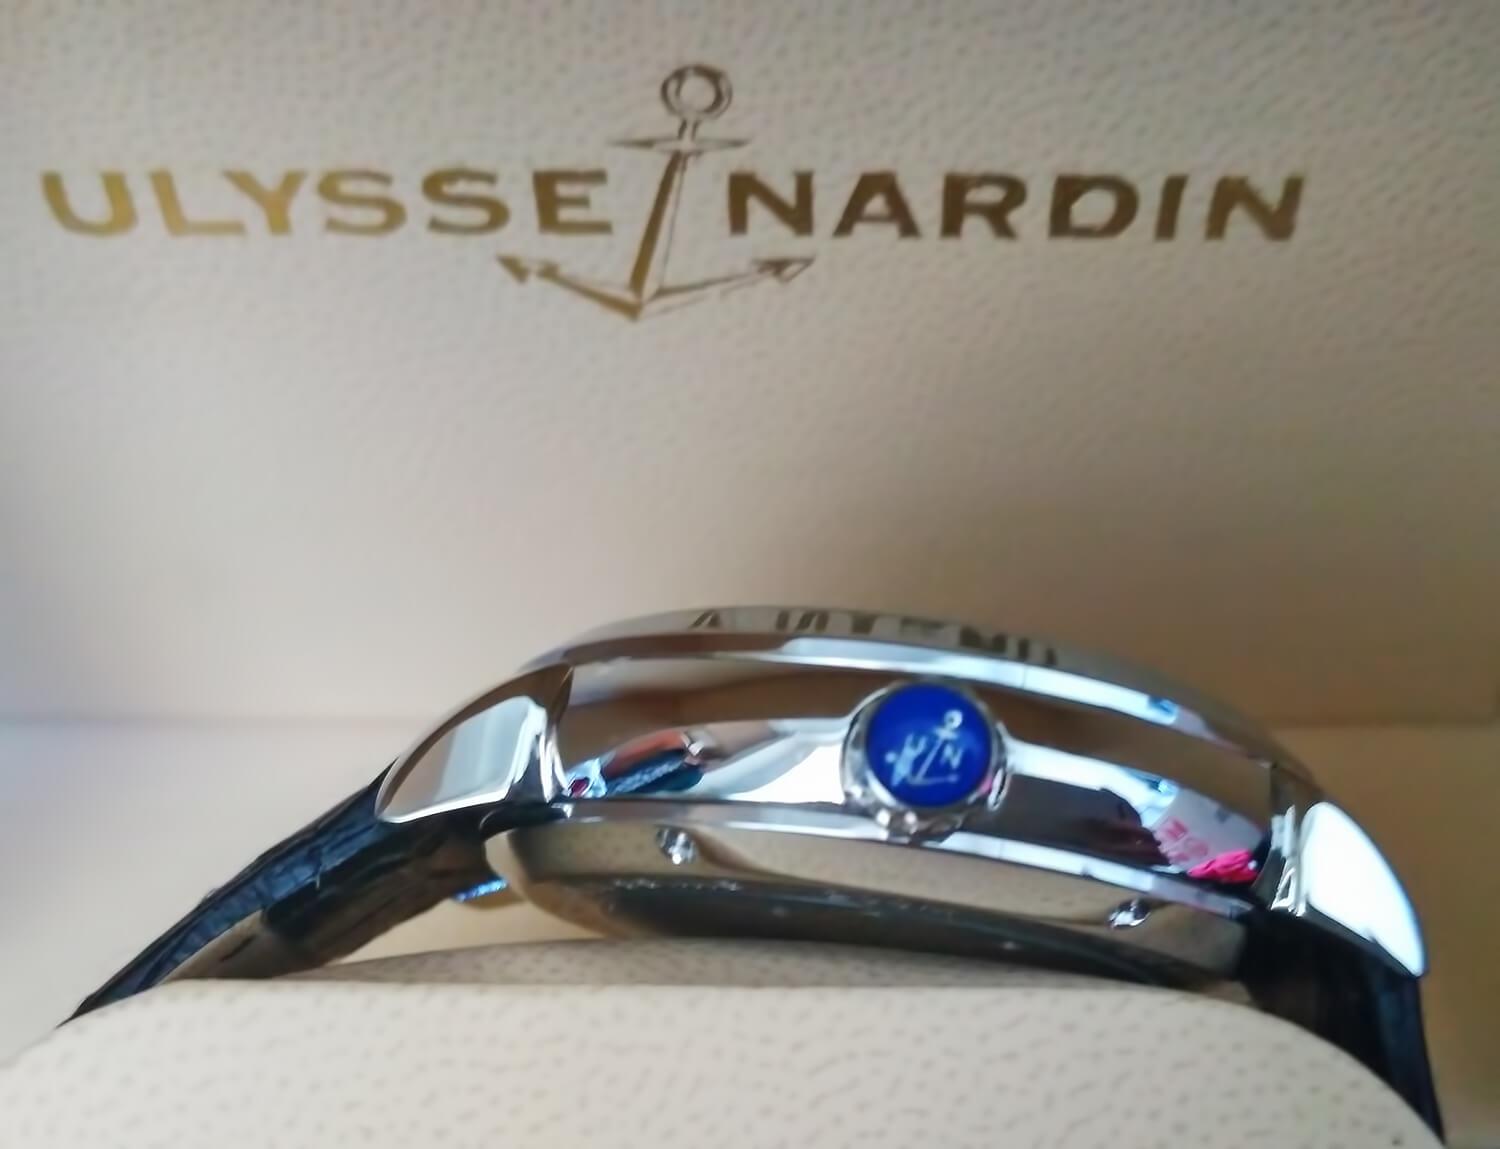 Логотип бренда Улисс Нардан нанесен на заводную головку часов